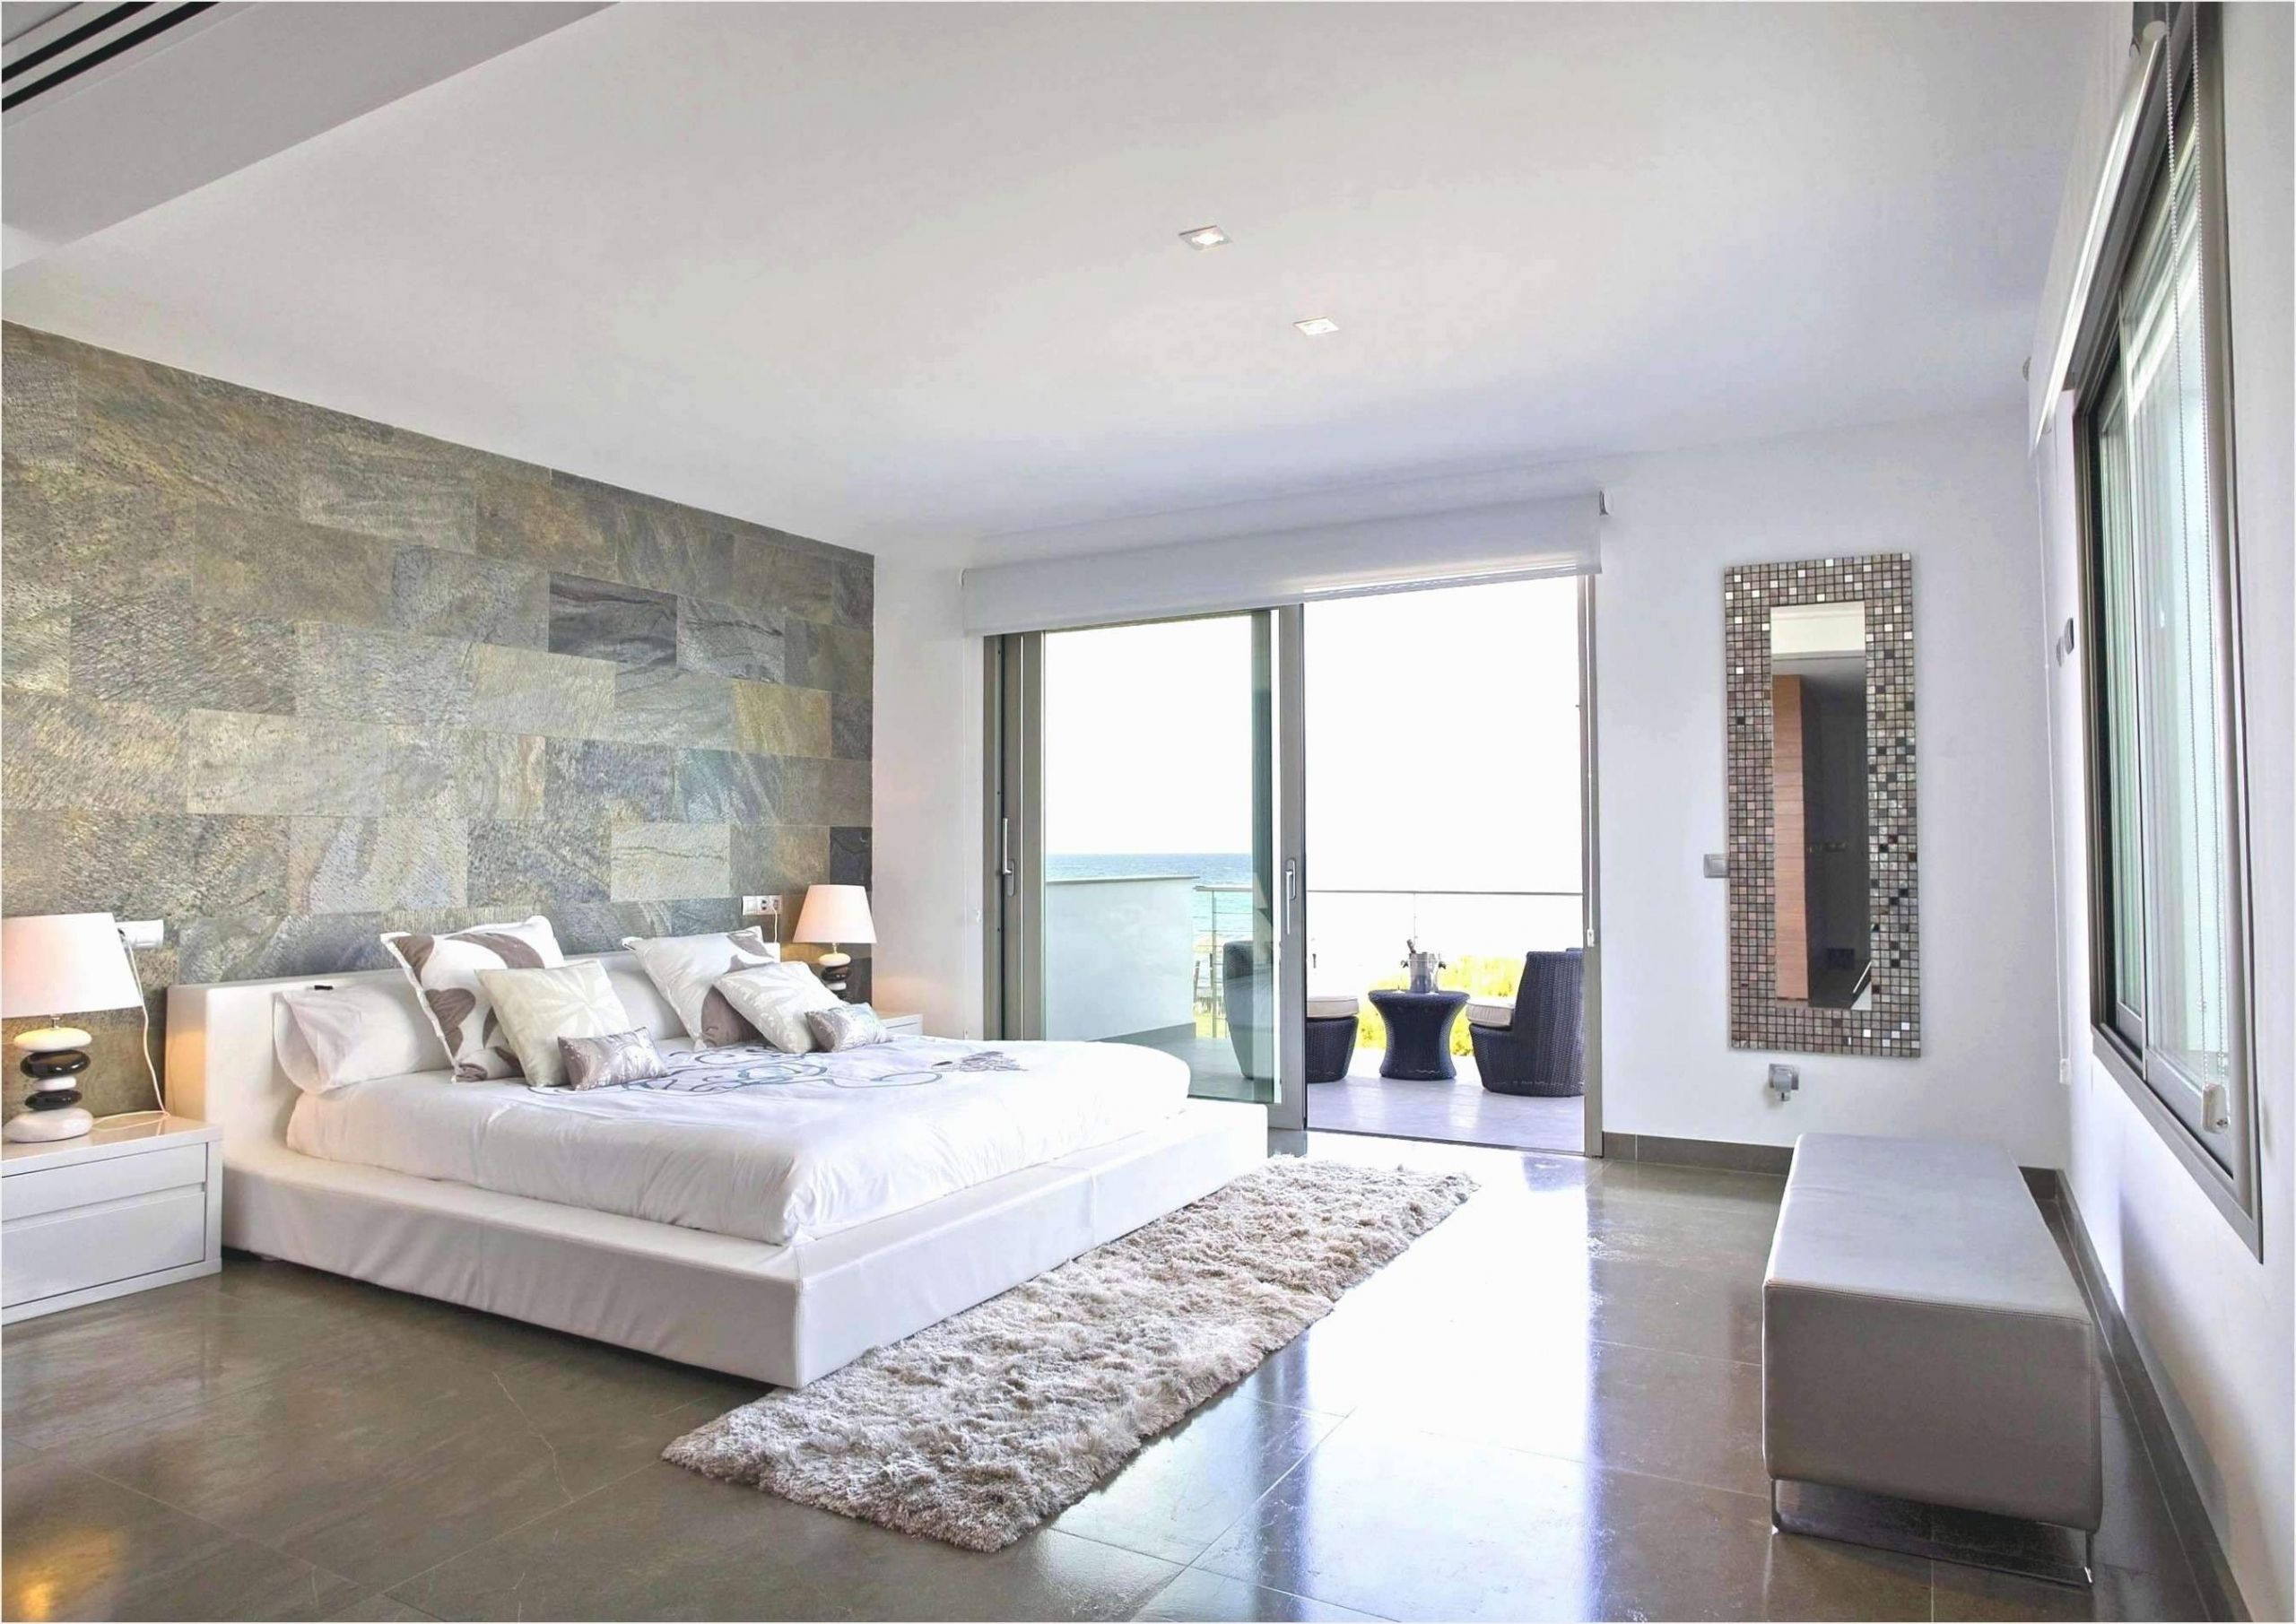 Dekoration Modern Luxus 40 Frisch Wohnzimmer 2015 Inspirierend